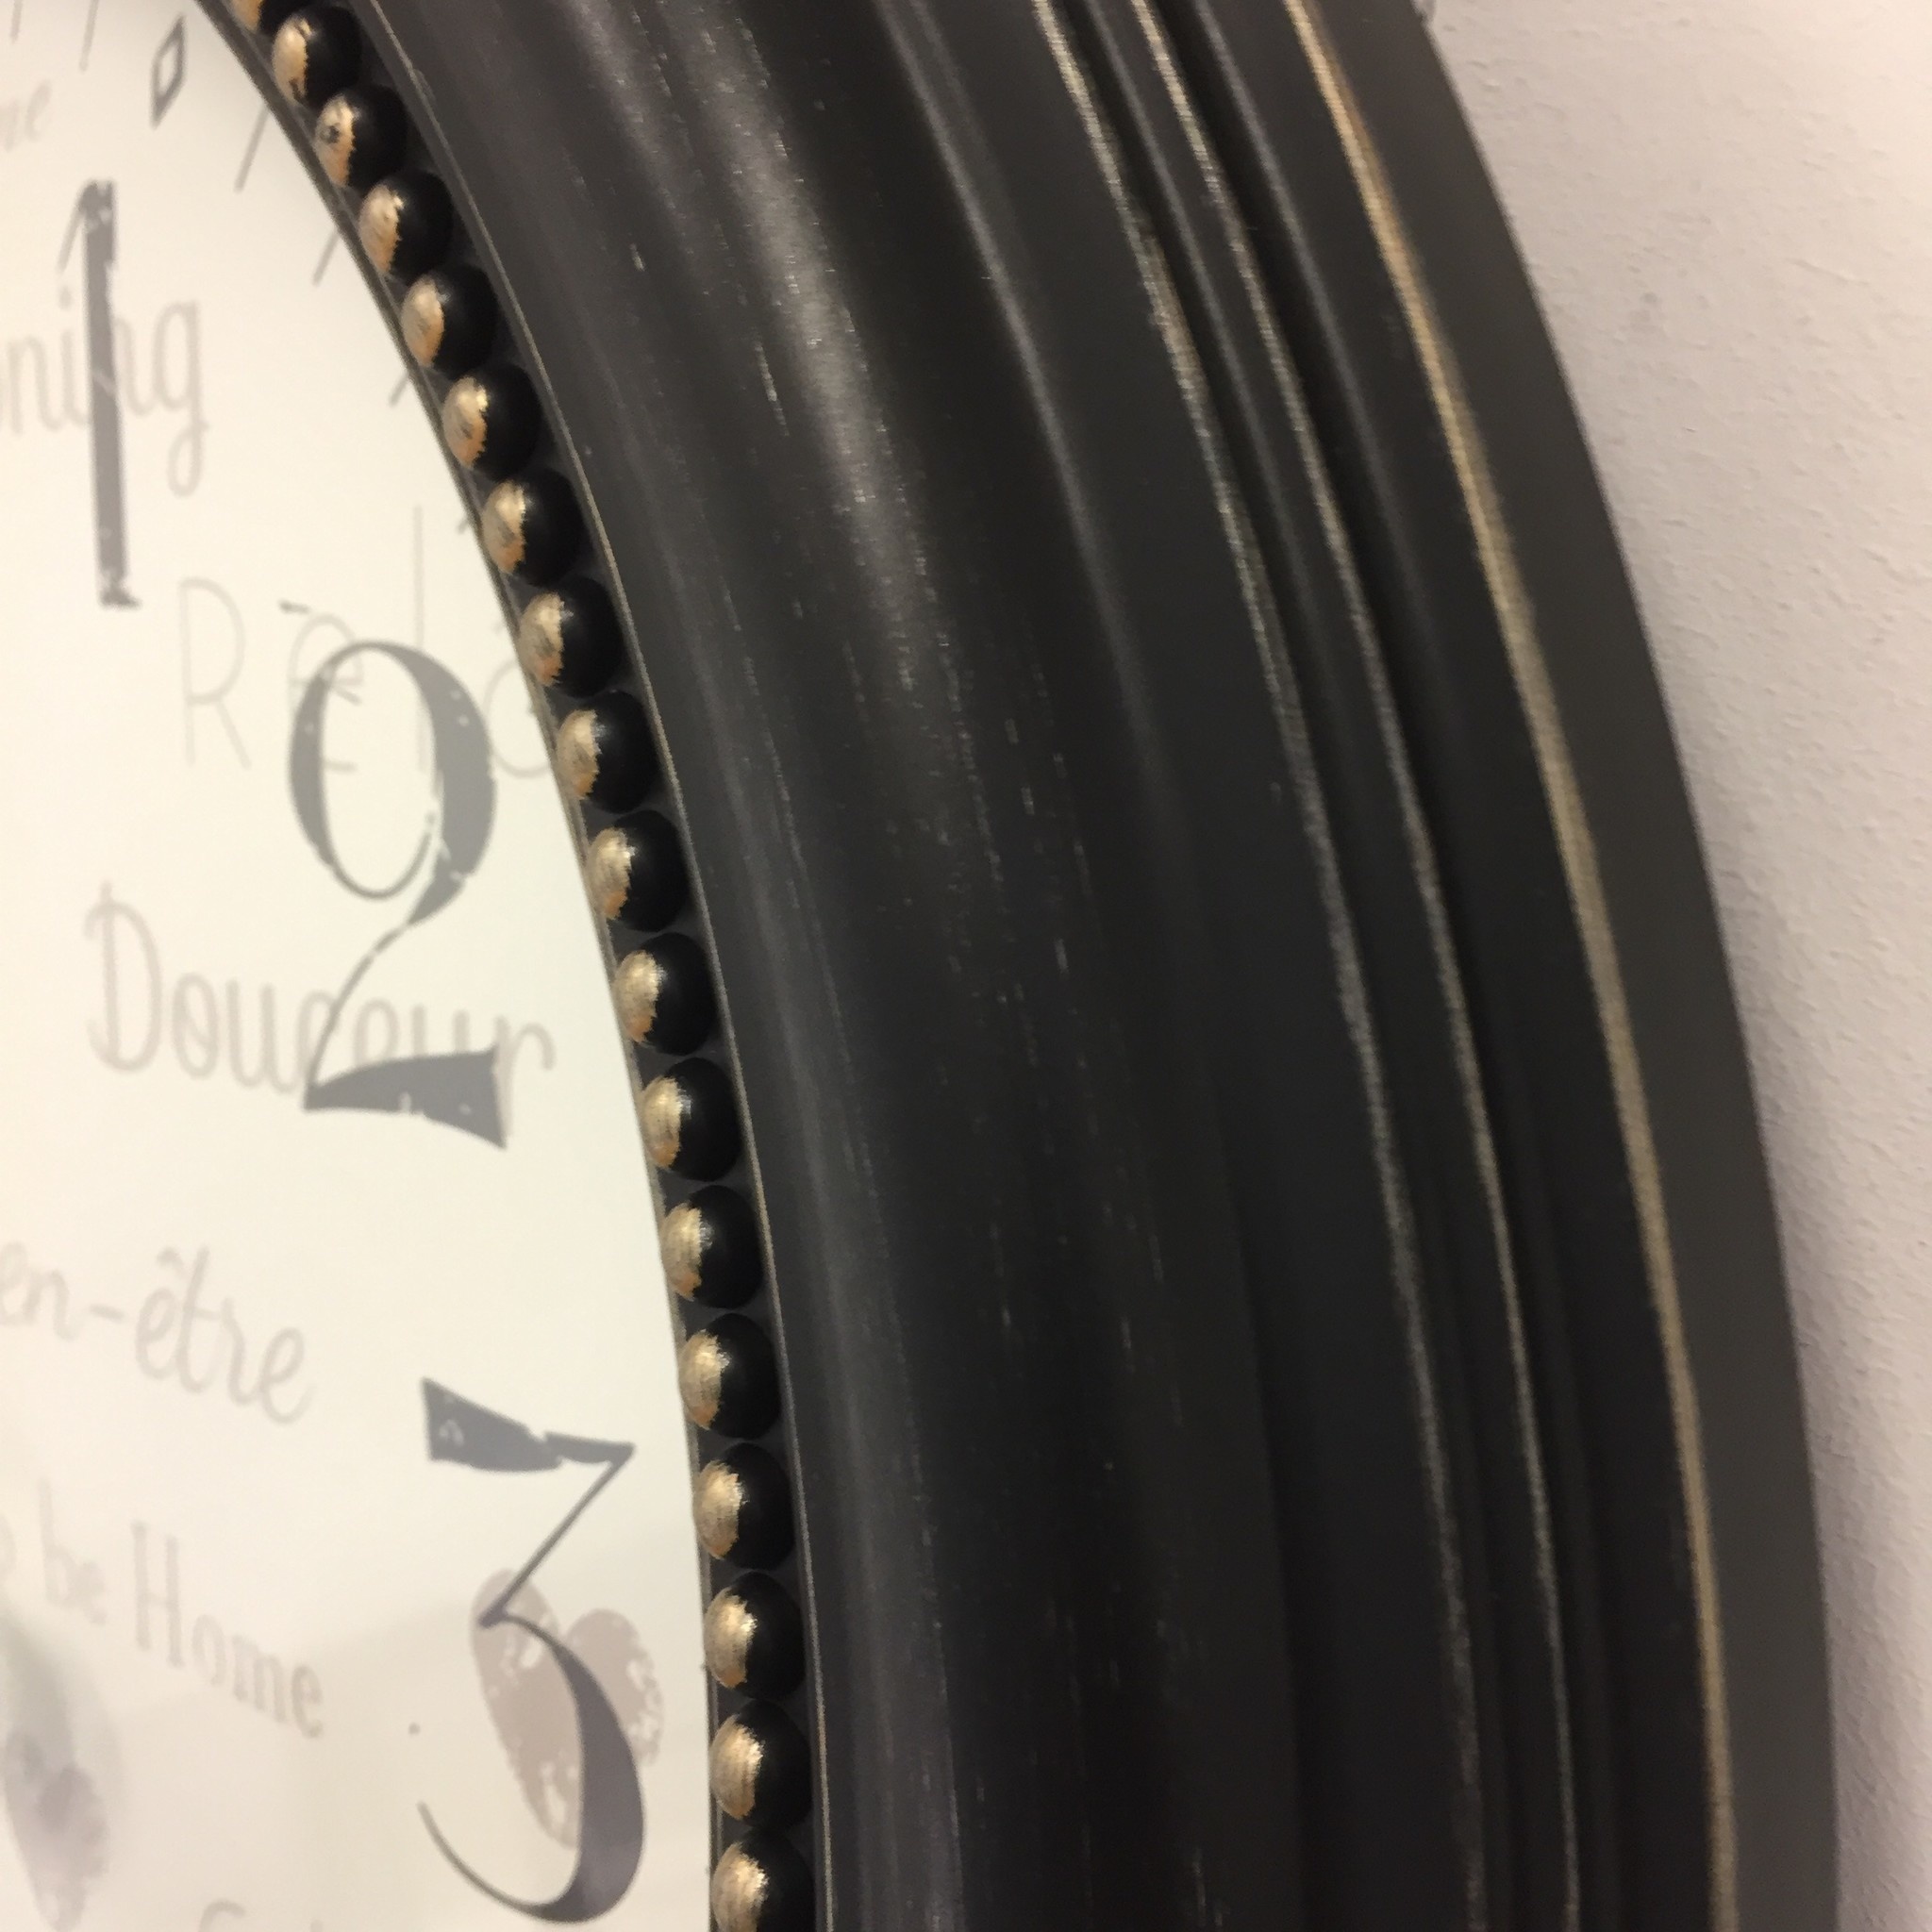 NiceTime Design - Wall clock Nostalgy Brown Vintage Design